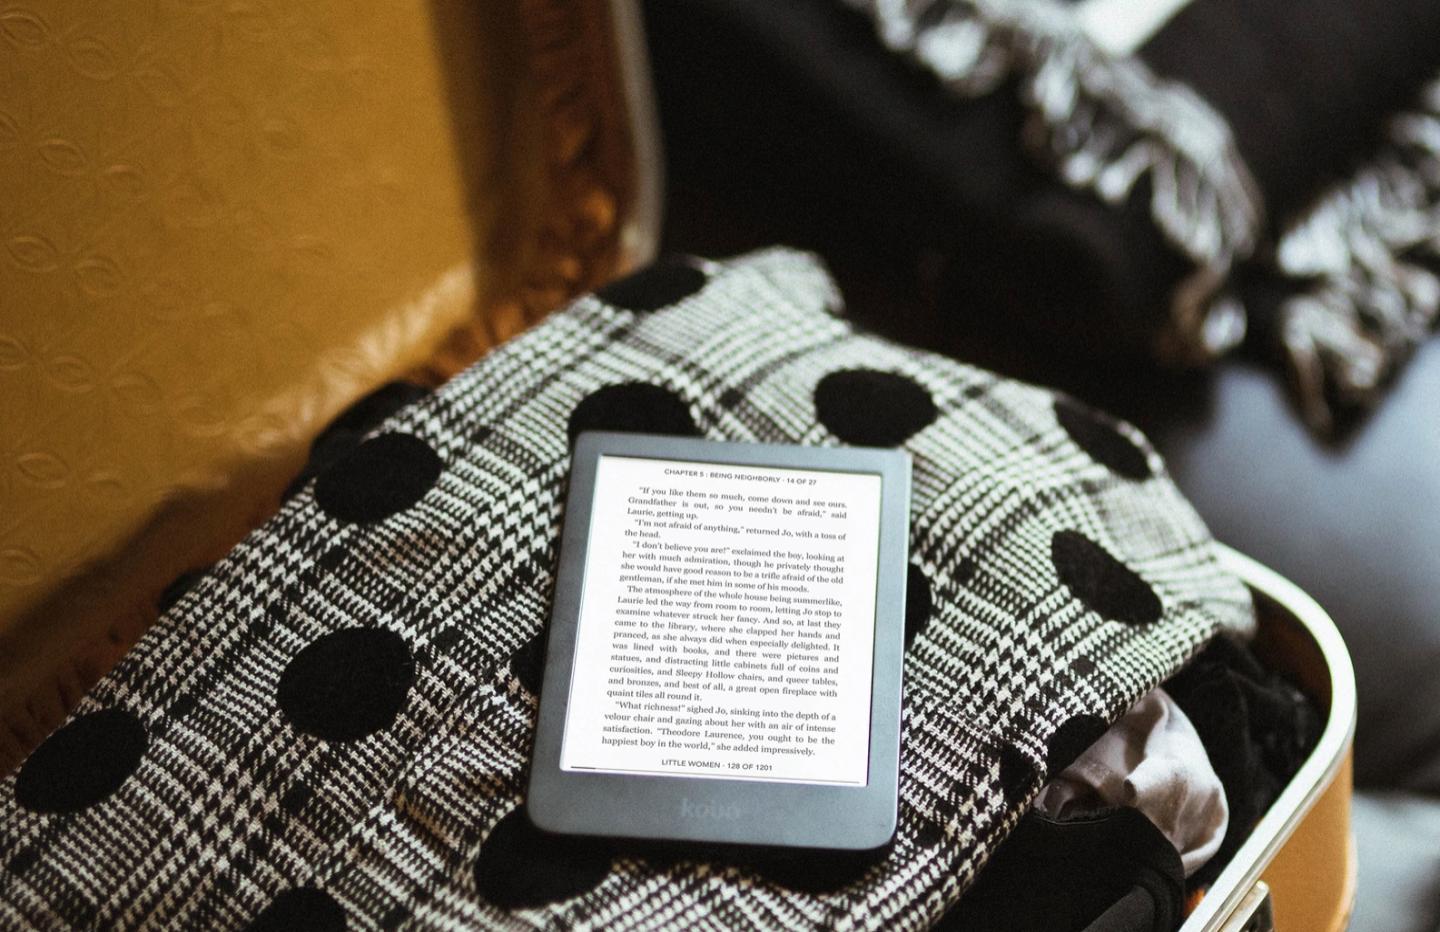 Kindle 2022 : la liseuse la moins chère d' est encore plus abordable  en ce Cyber Monday